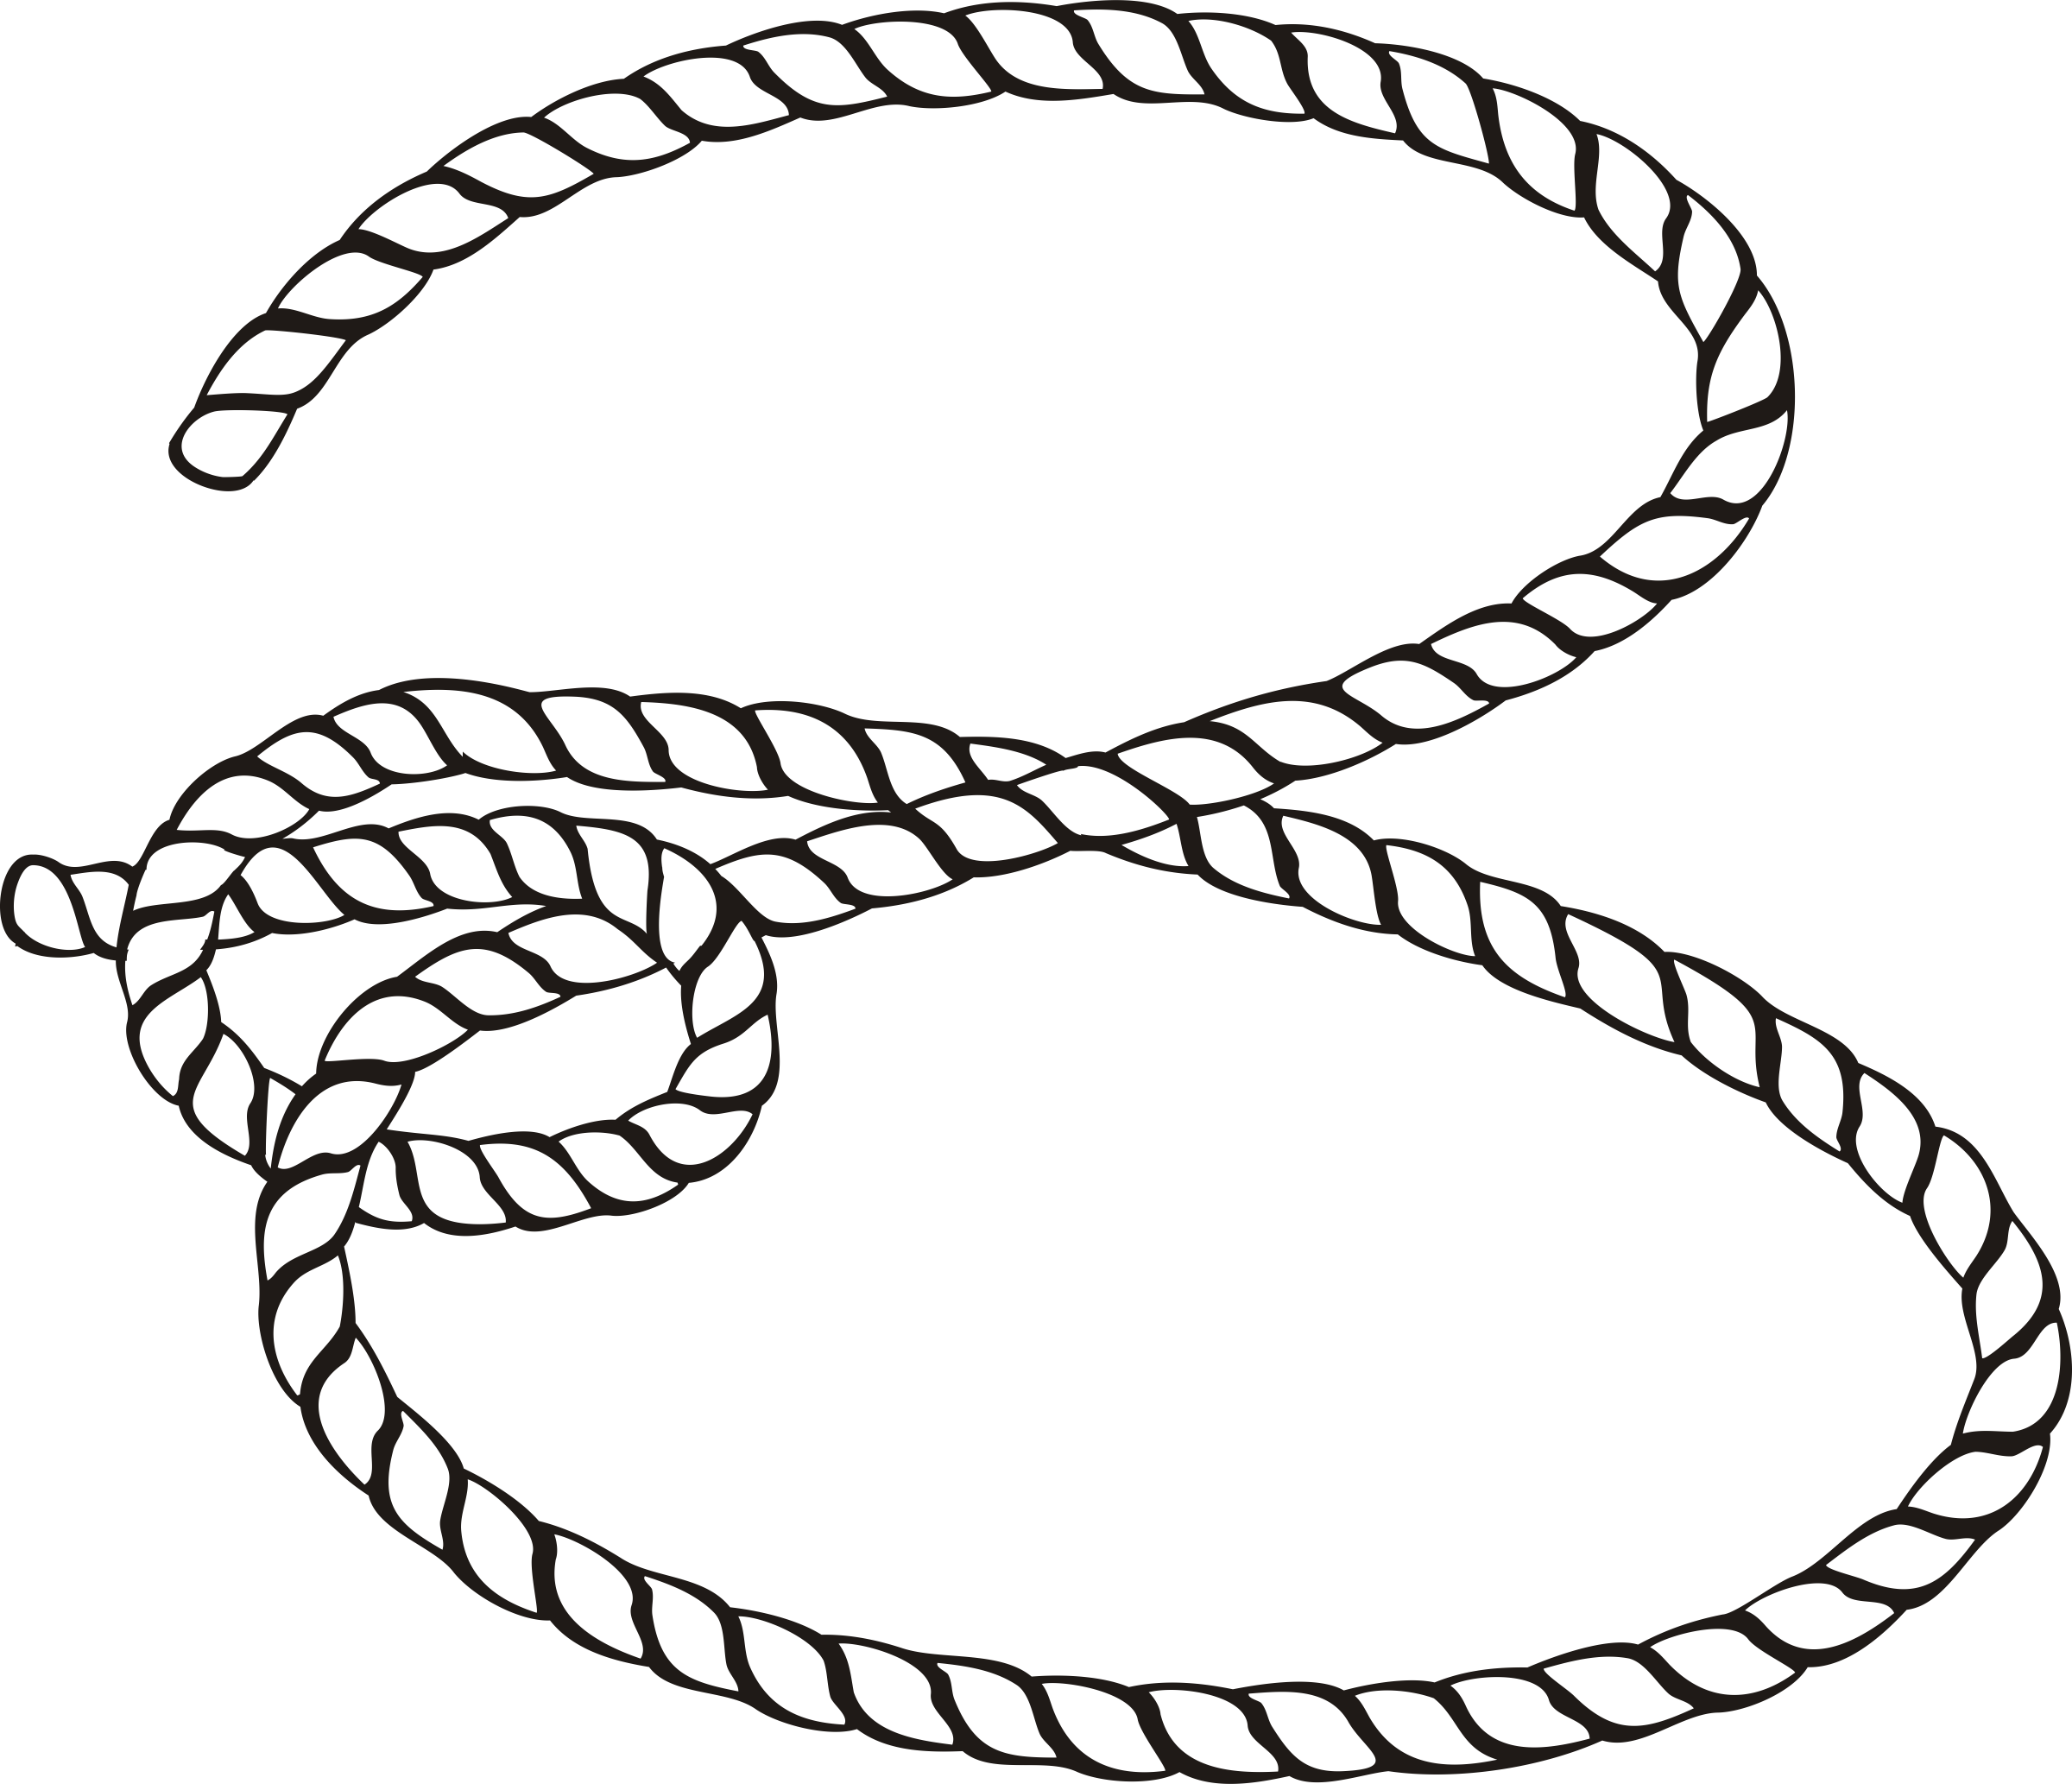 rope illustration download